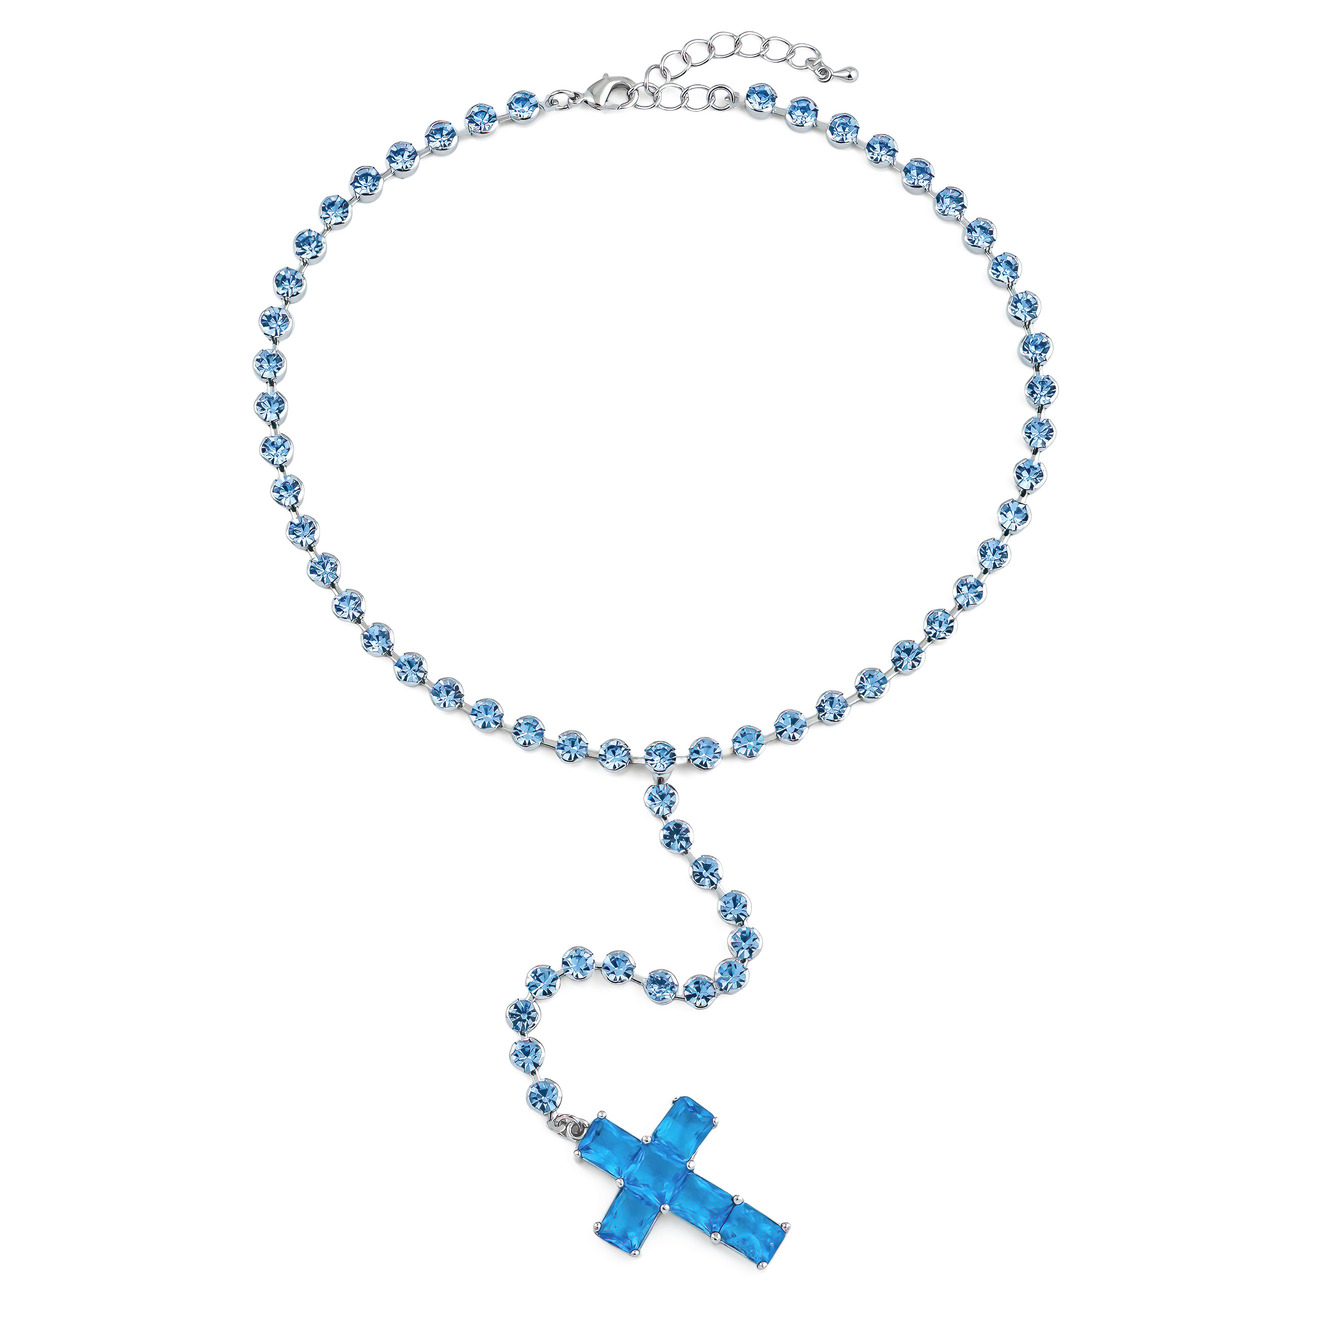 Herald Percy Серебристое колье-галстук с голубыми кристаллами в виде креста herald percy серебристое длинное колье с крестом с кристаллами